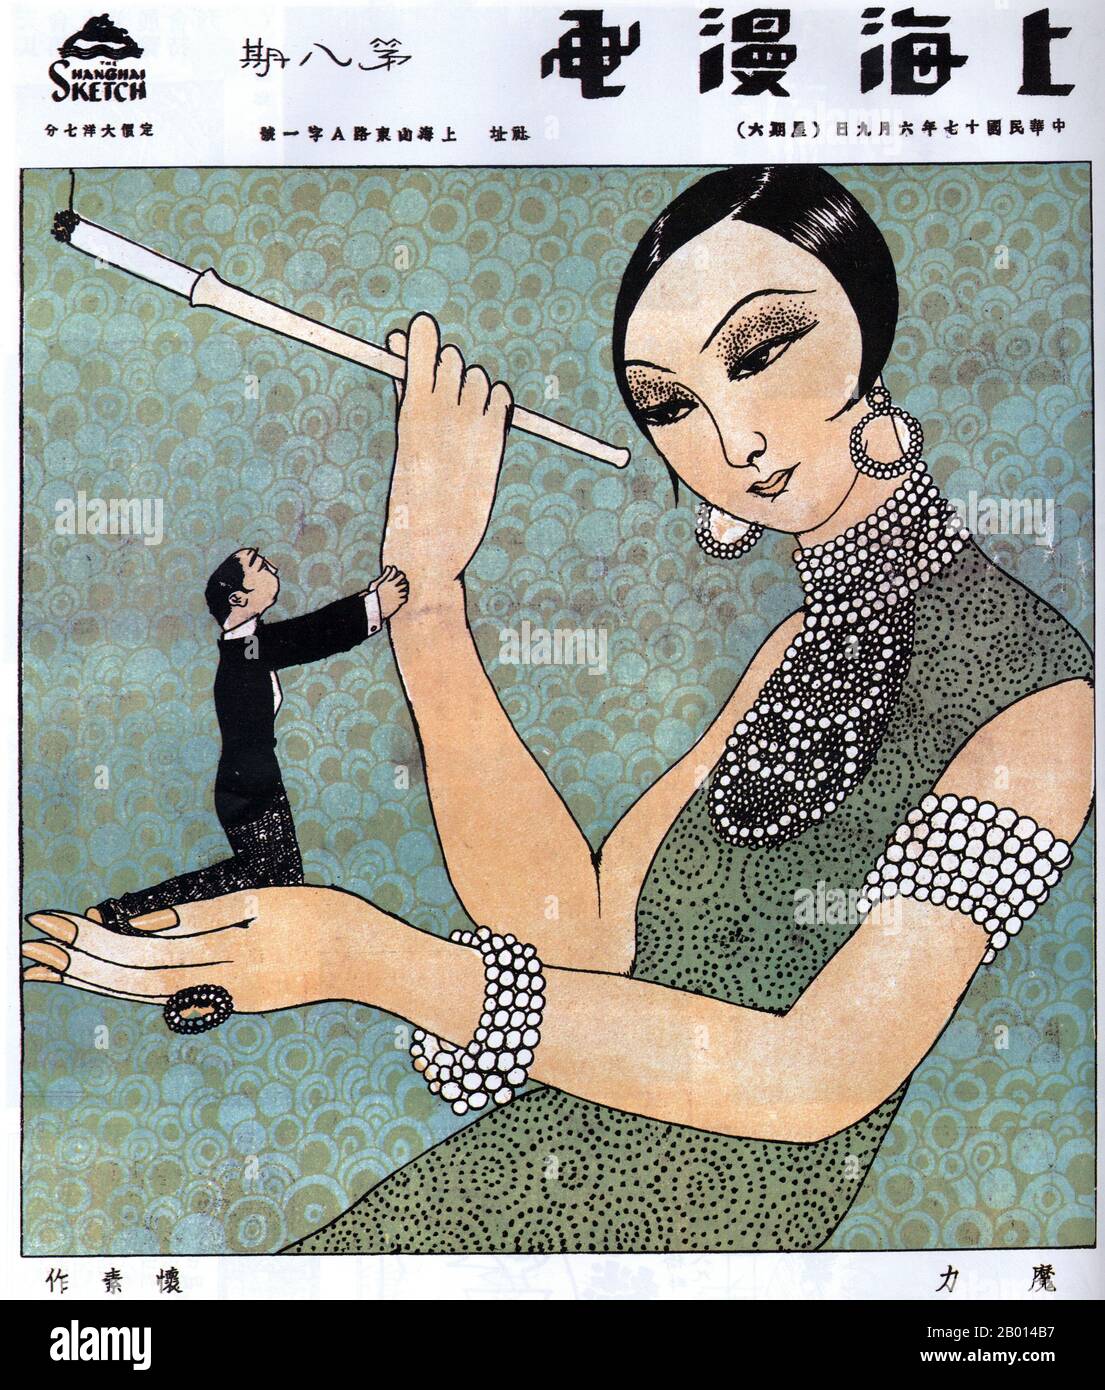 Chine: Une image de 'Shanghai Manhua' intitulée 'fascination' montre une  socialite féminine habillée et habillée avec un porte-cigarette d'une main  et un mâle sous-missif et suppliant de l'autre. Par Huaisu, le 9